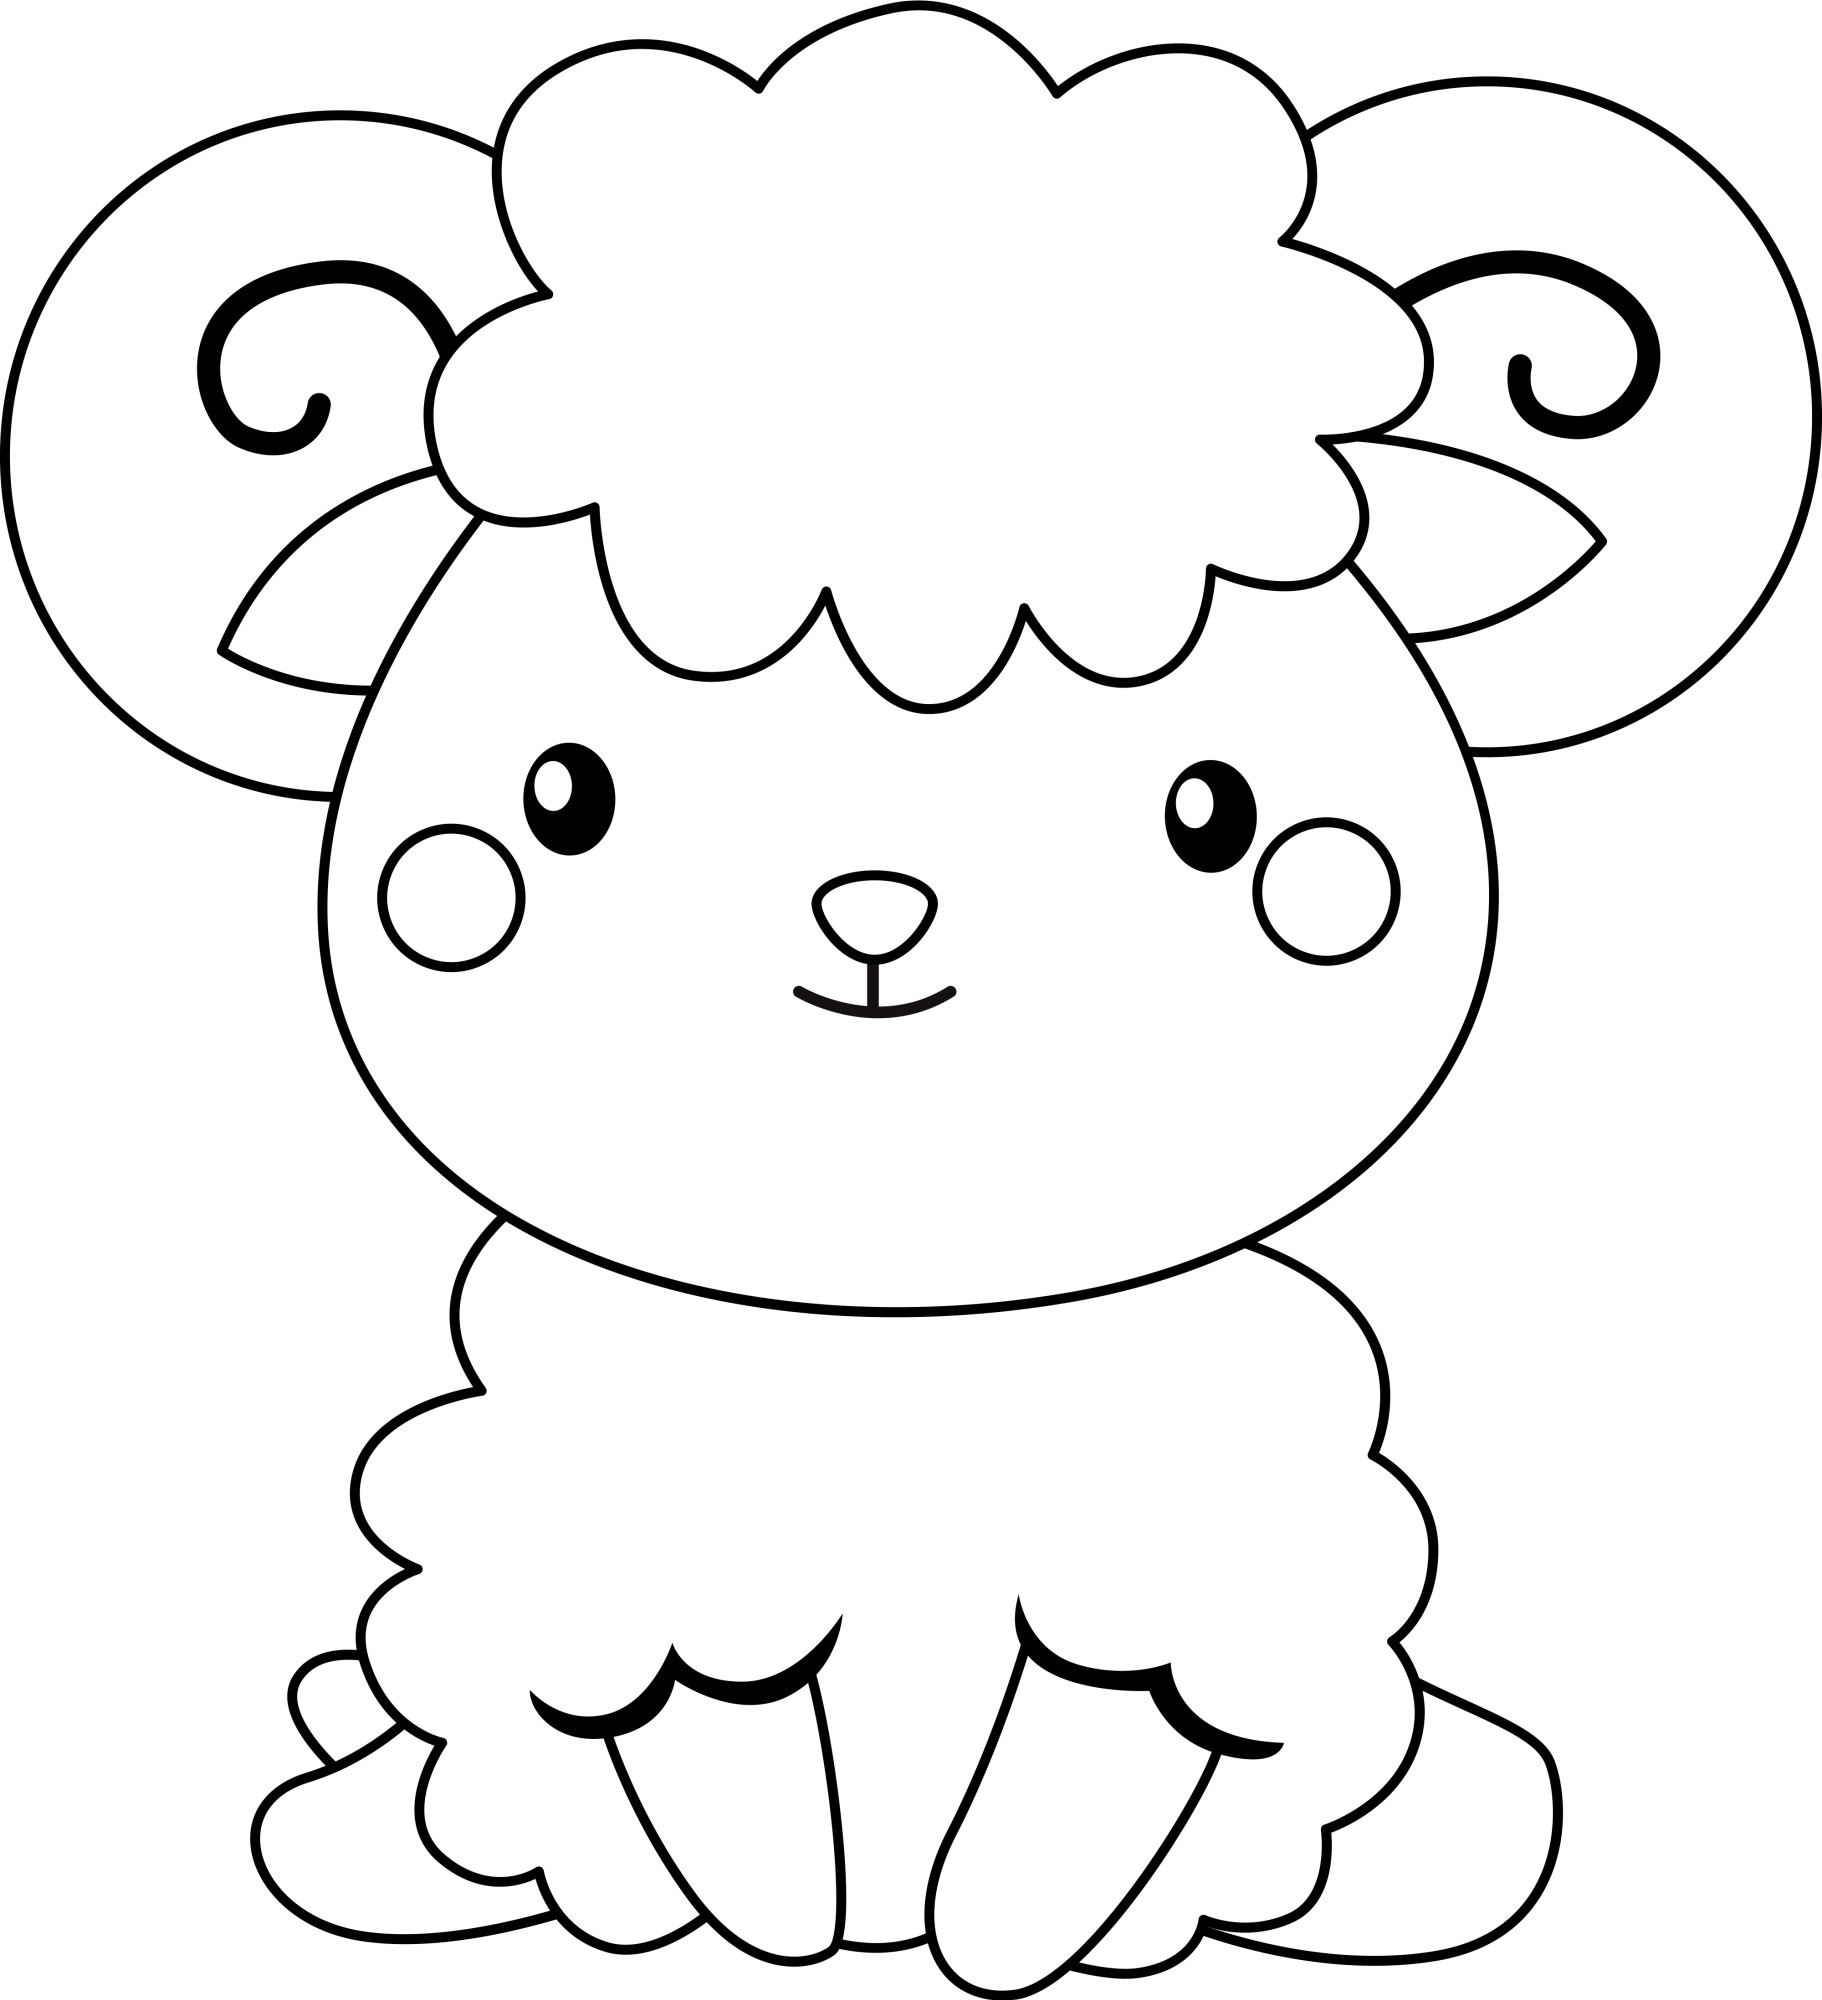 Раскраска для детей: маленькая овечка с милым лицом